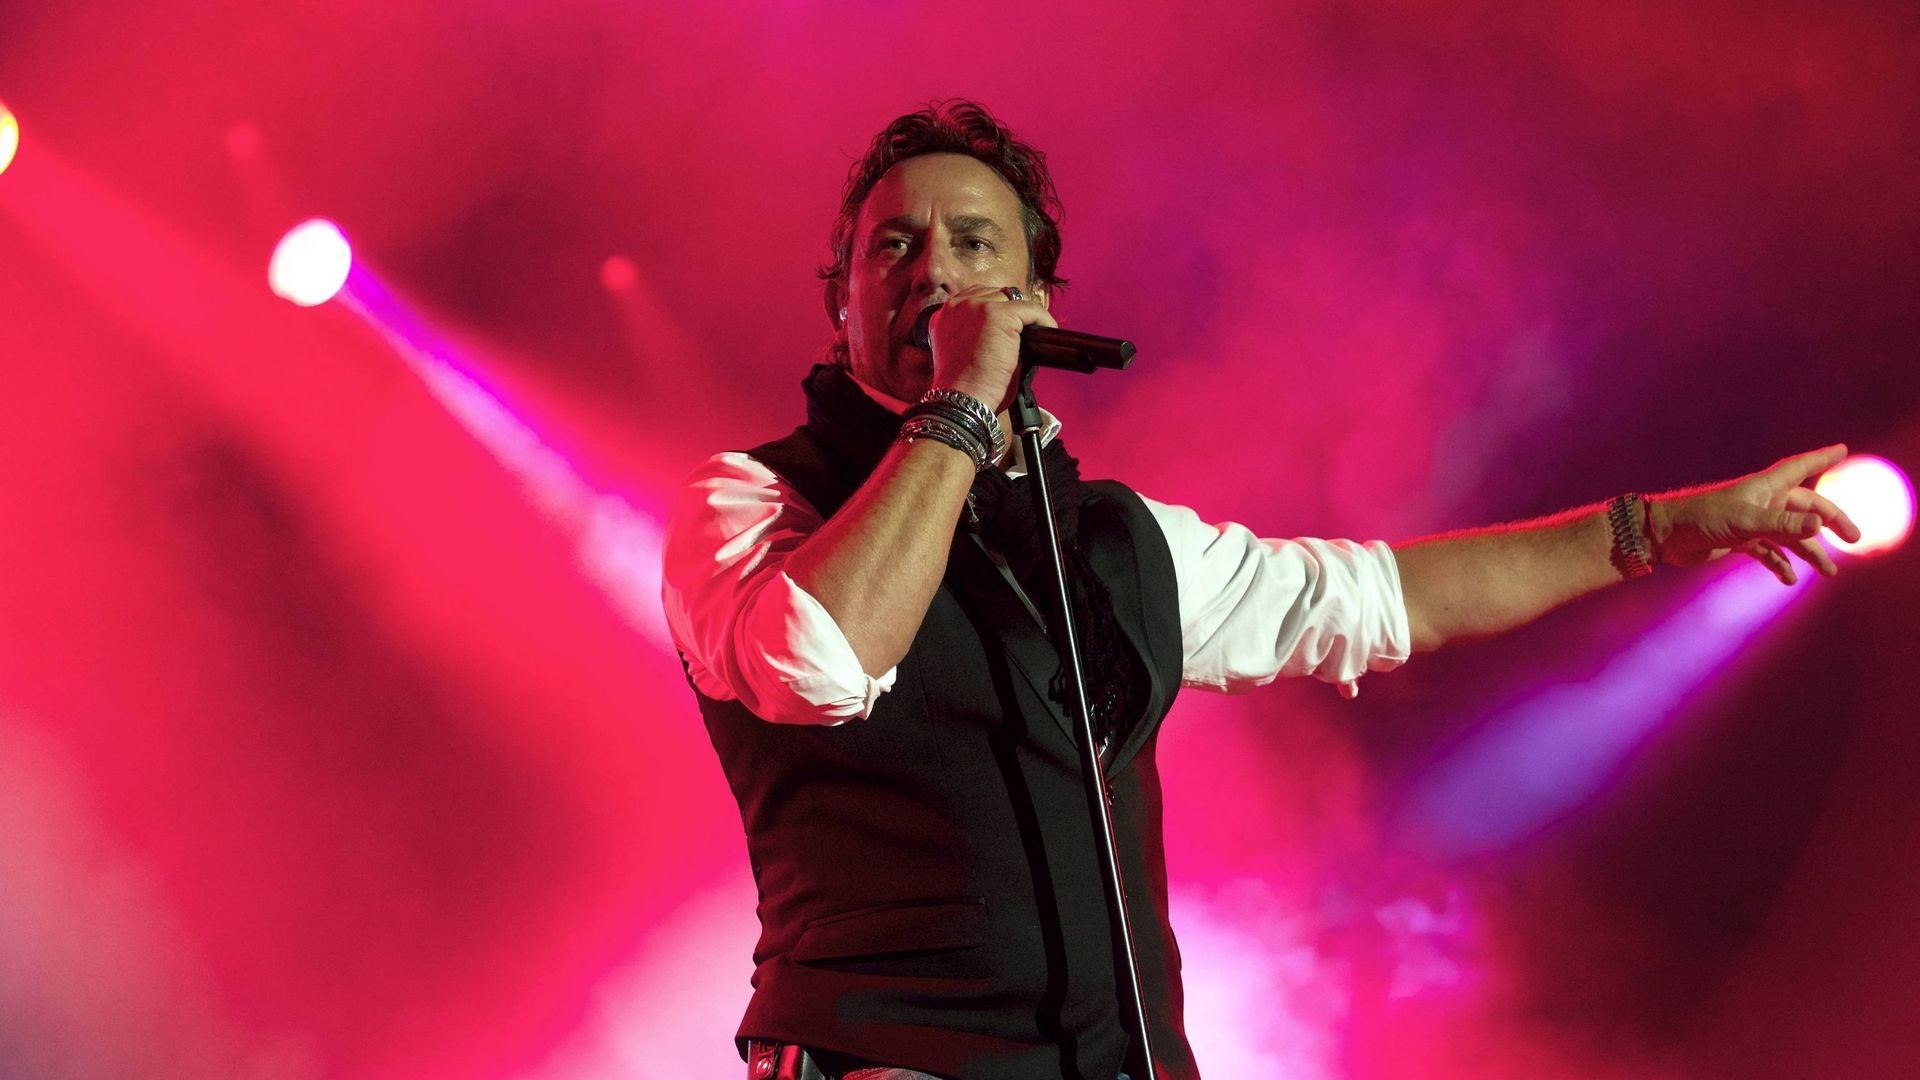 Marco Borsato lors d'un concert à Tirlemont, le 2 août 2015.  